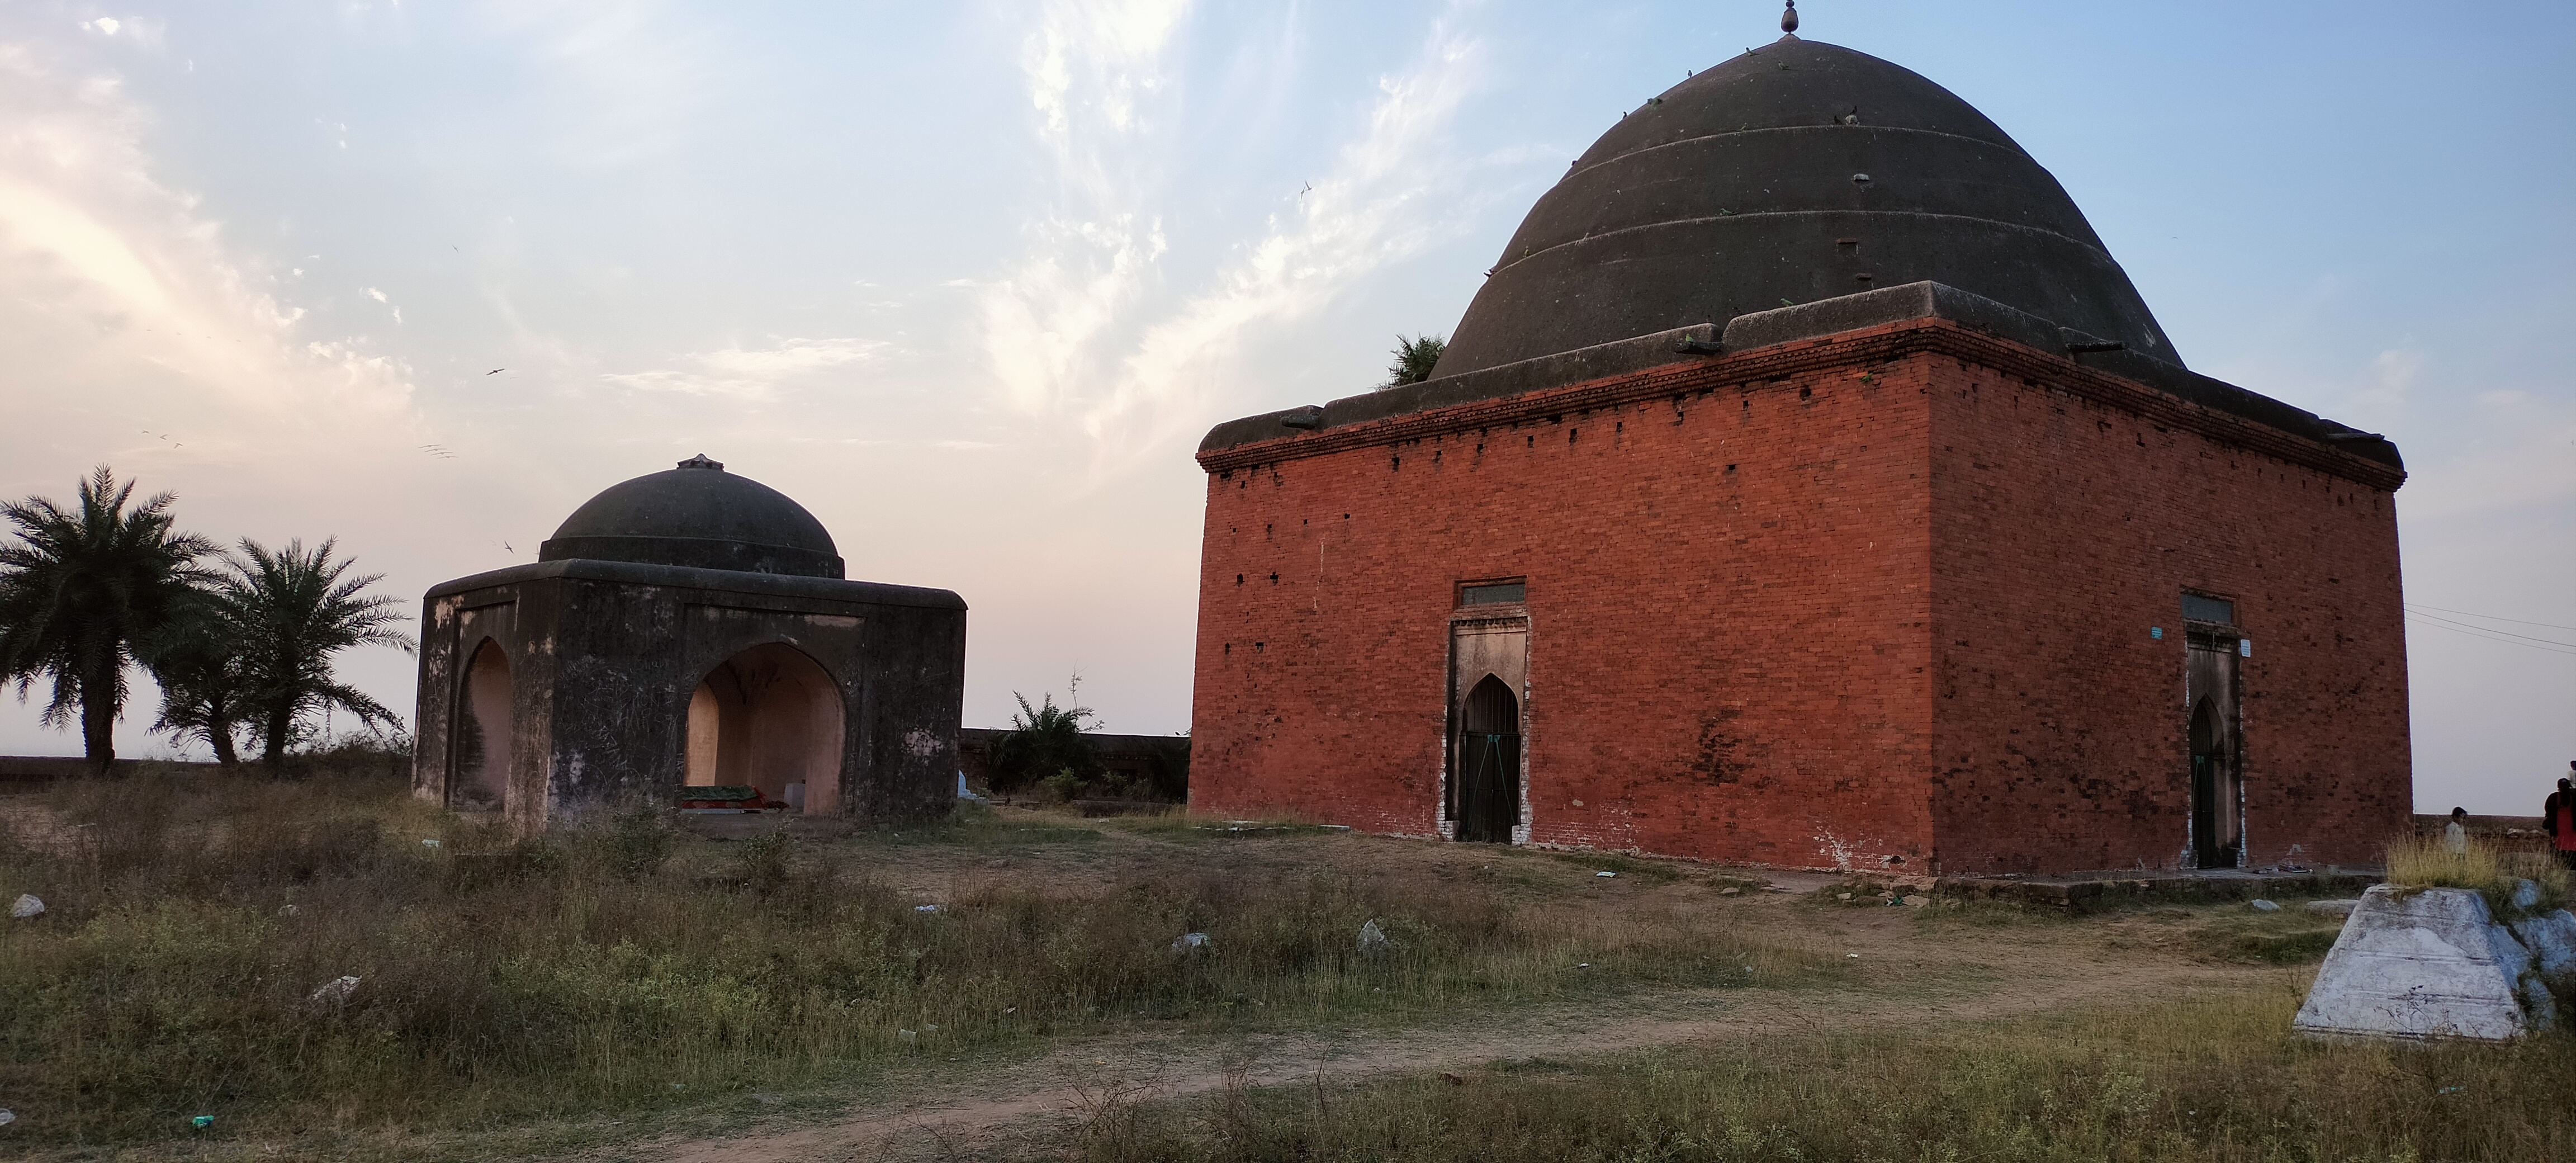 Mausoleum of Ibrahim Bayu and other tombs